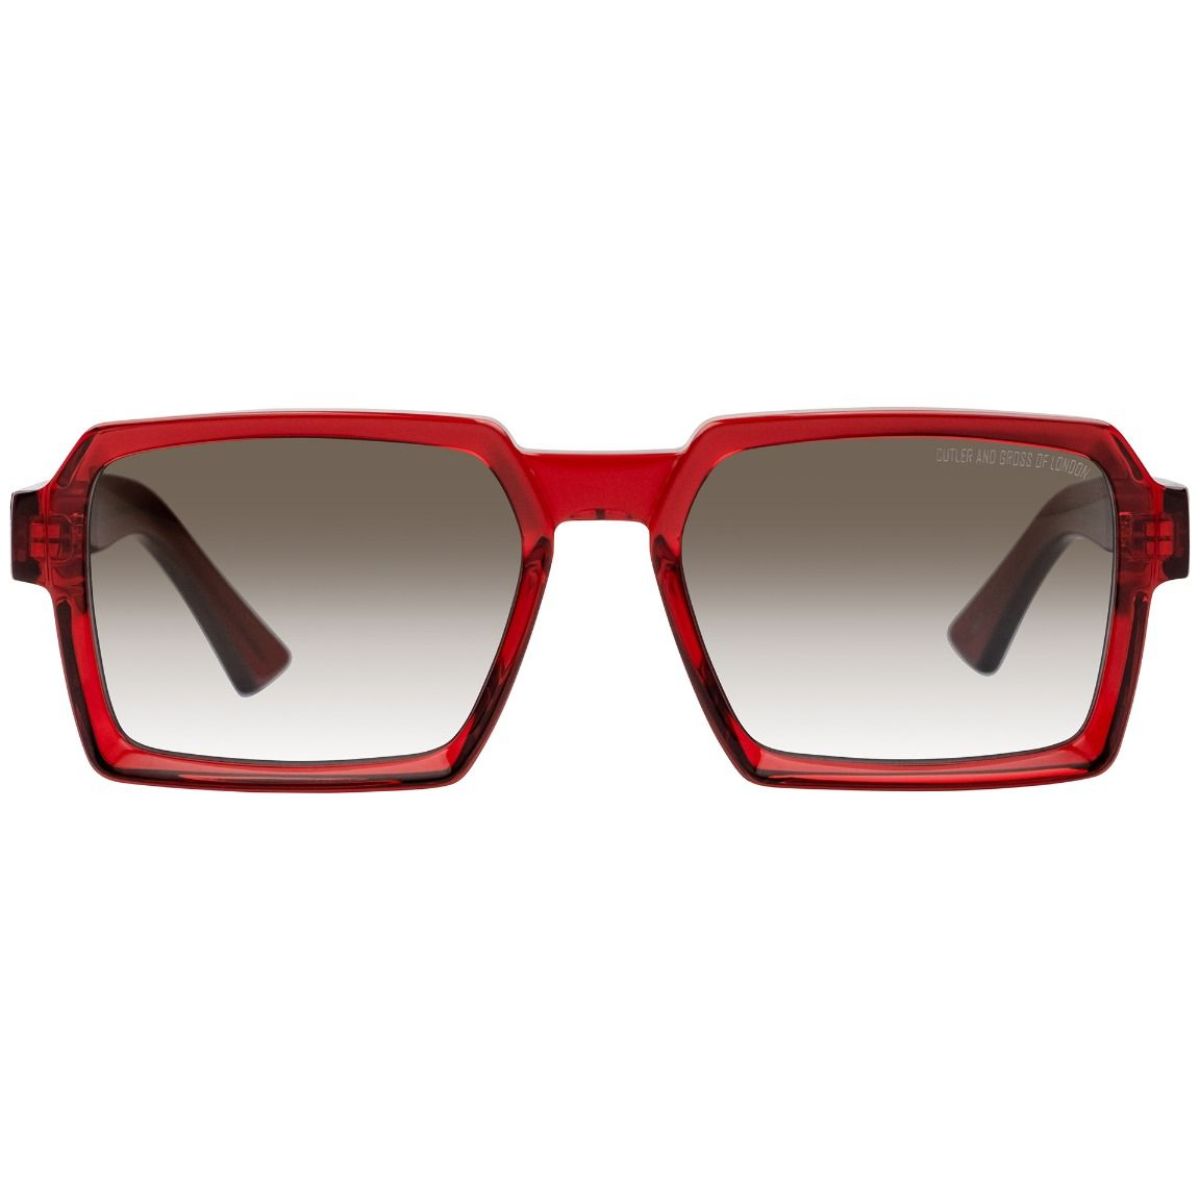 Cutler & Gross 13851385-02 Sunglasses